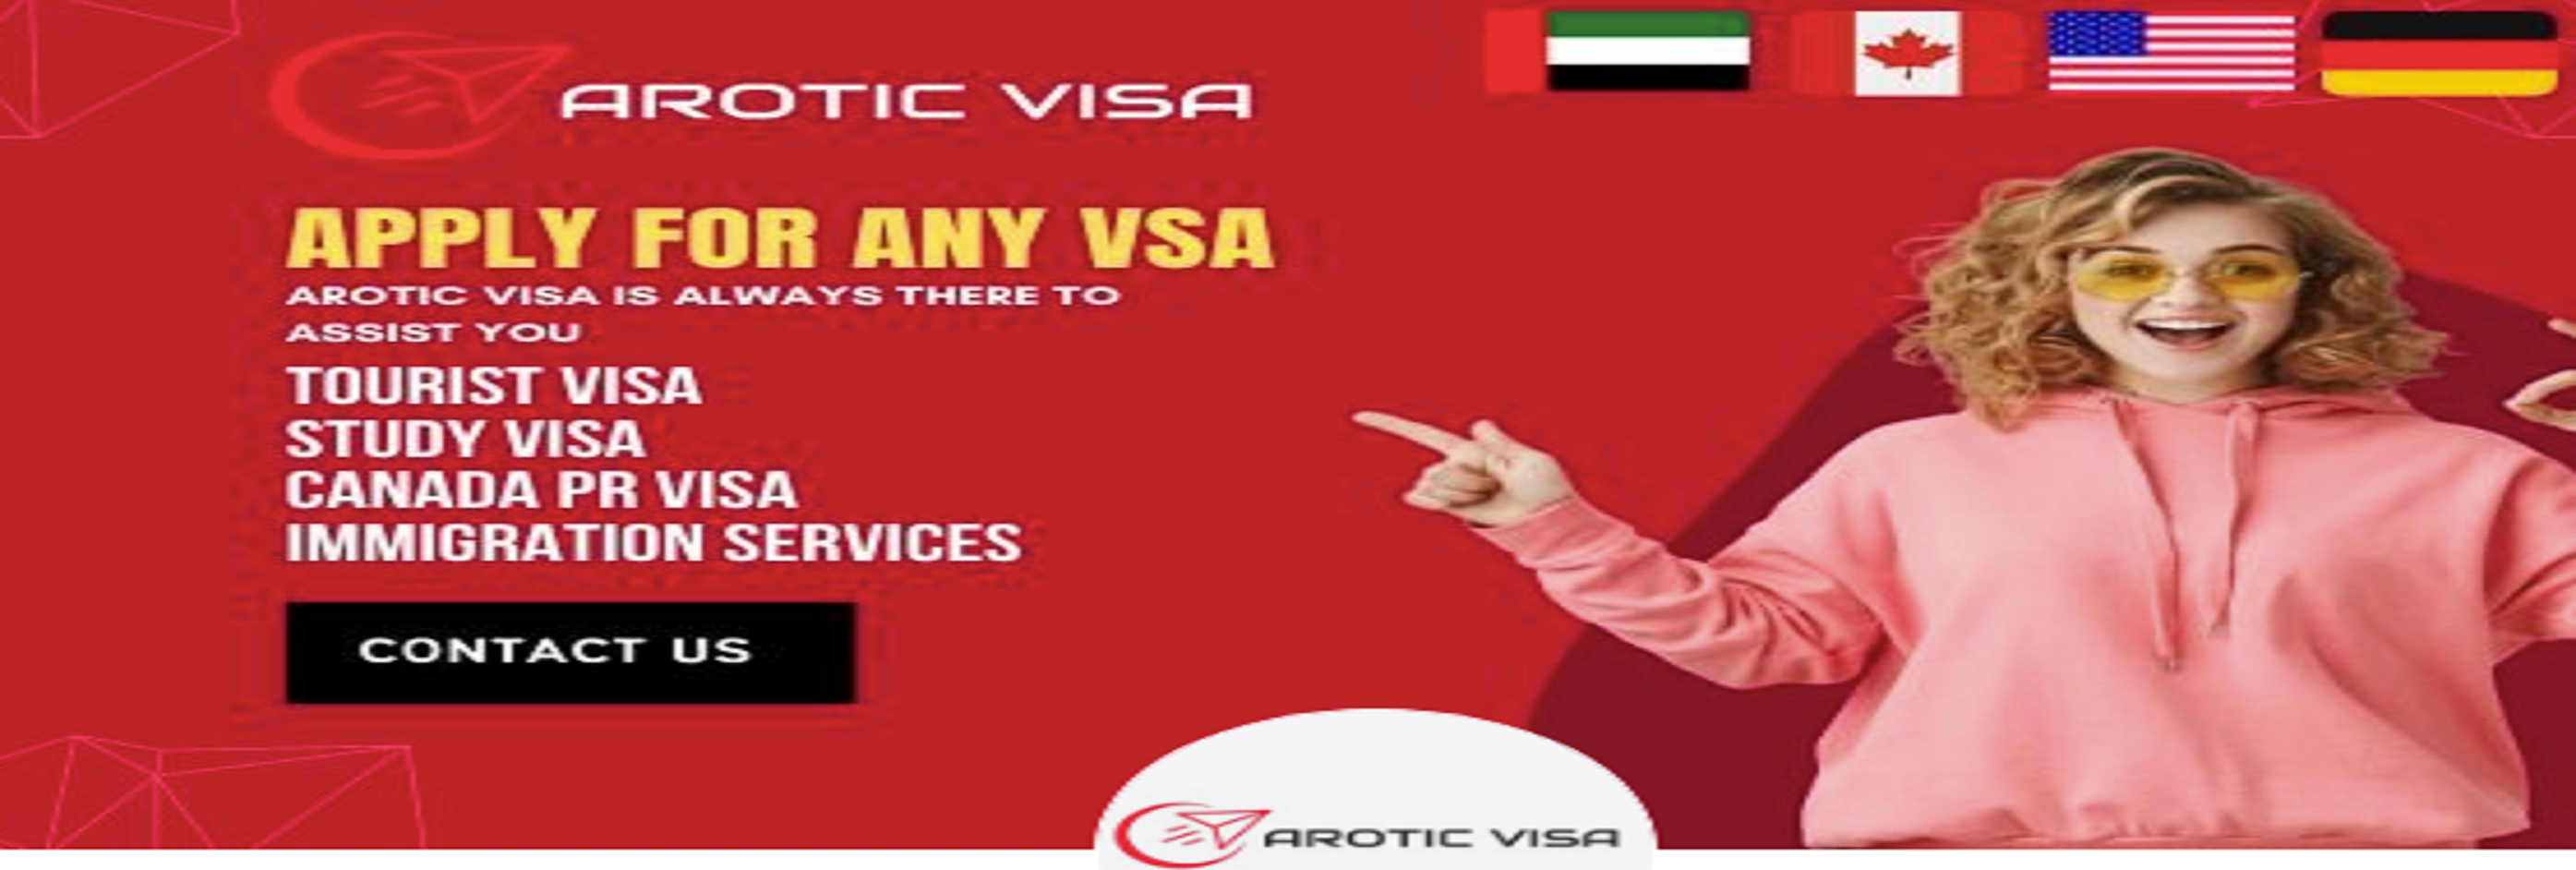 Arotic Visa Pvt Ltd cover